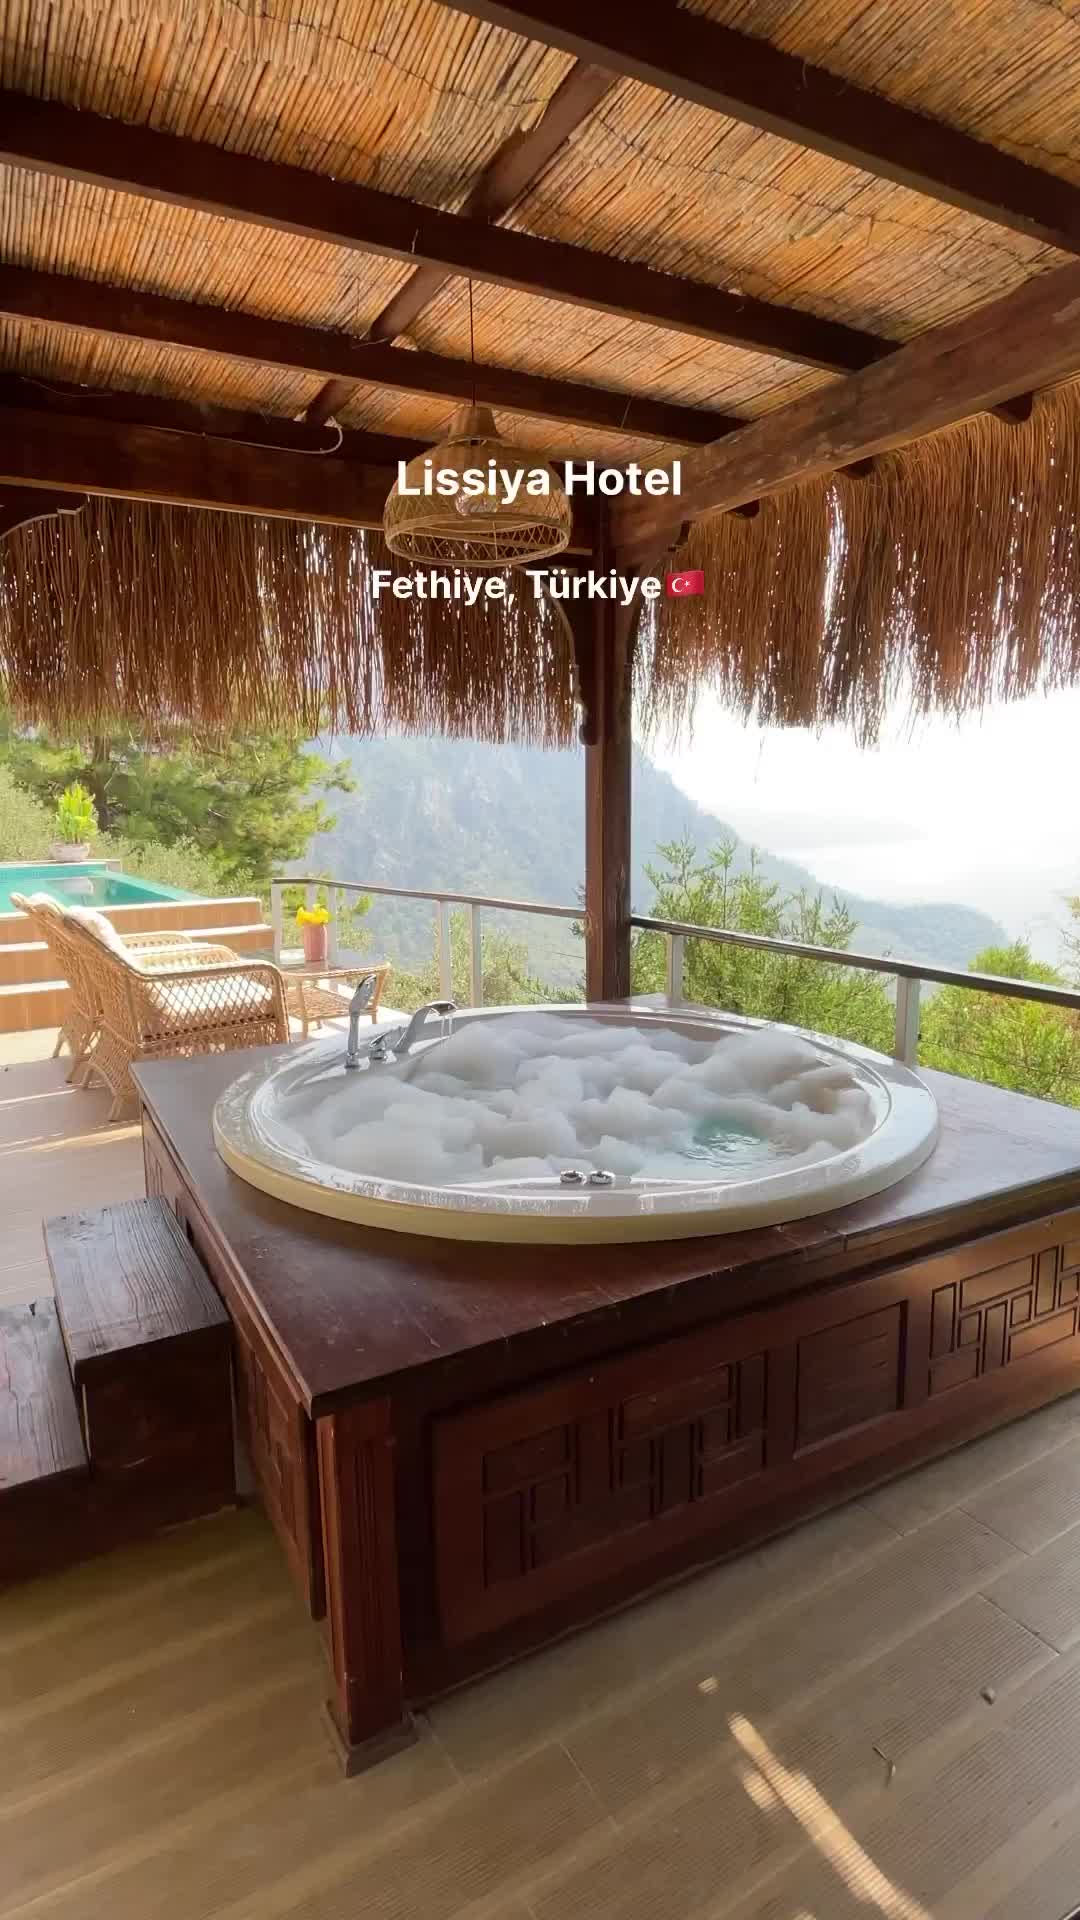 Luxurious Getaway at Lissiya Hotel in Fethiye, Turkey